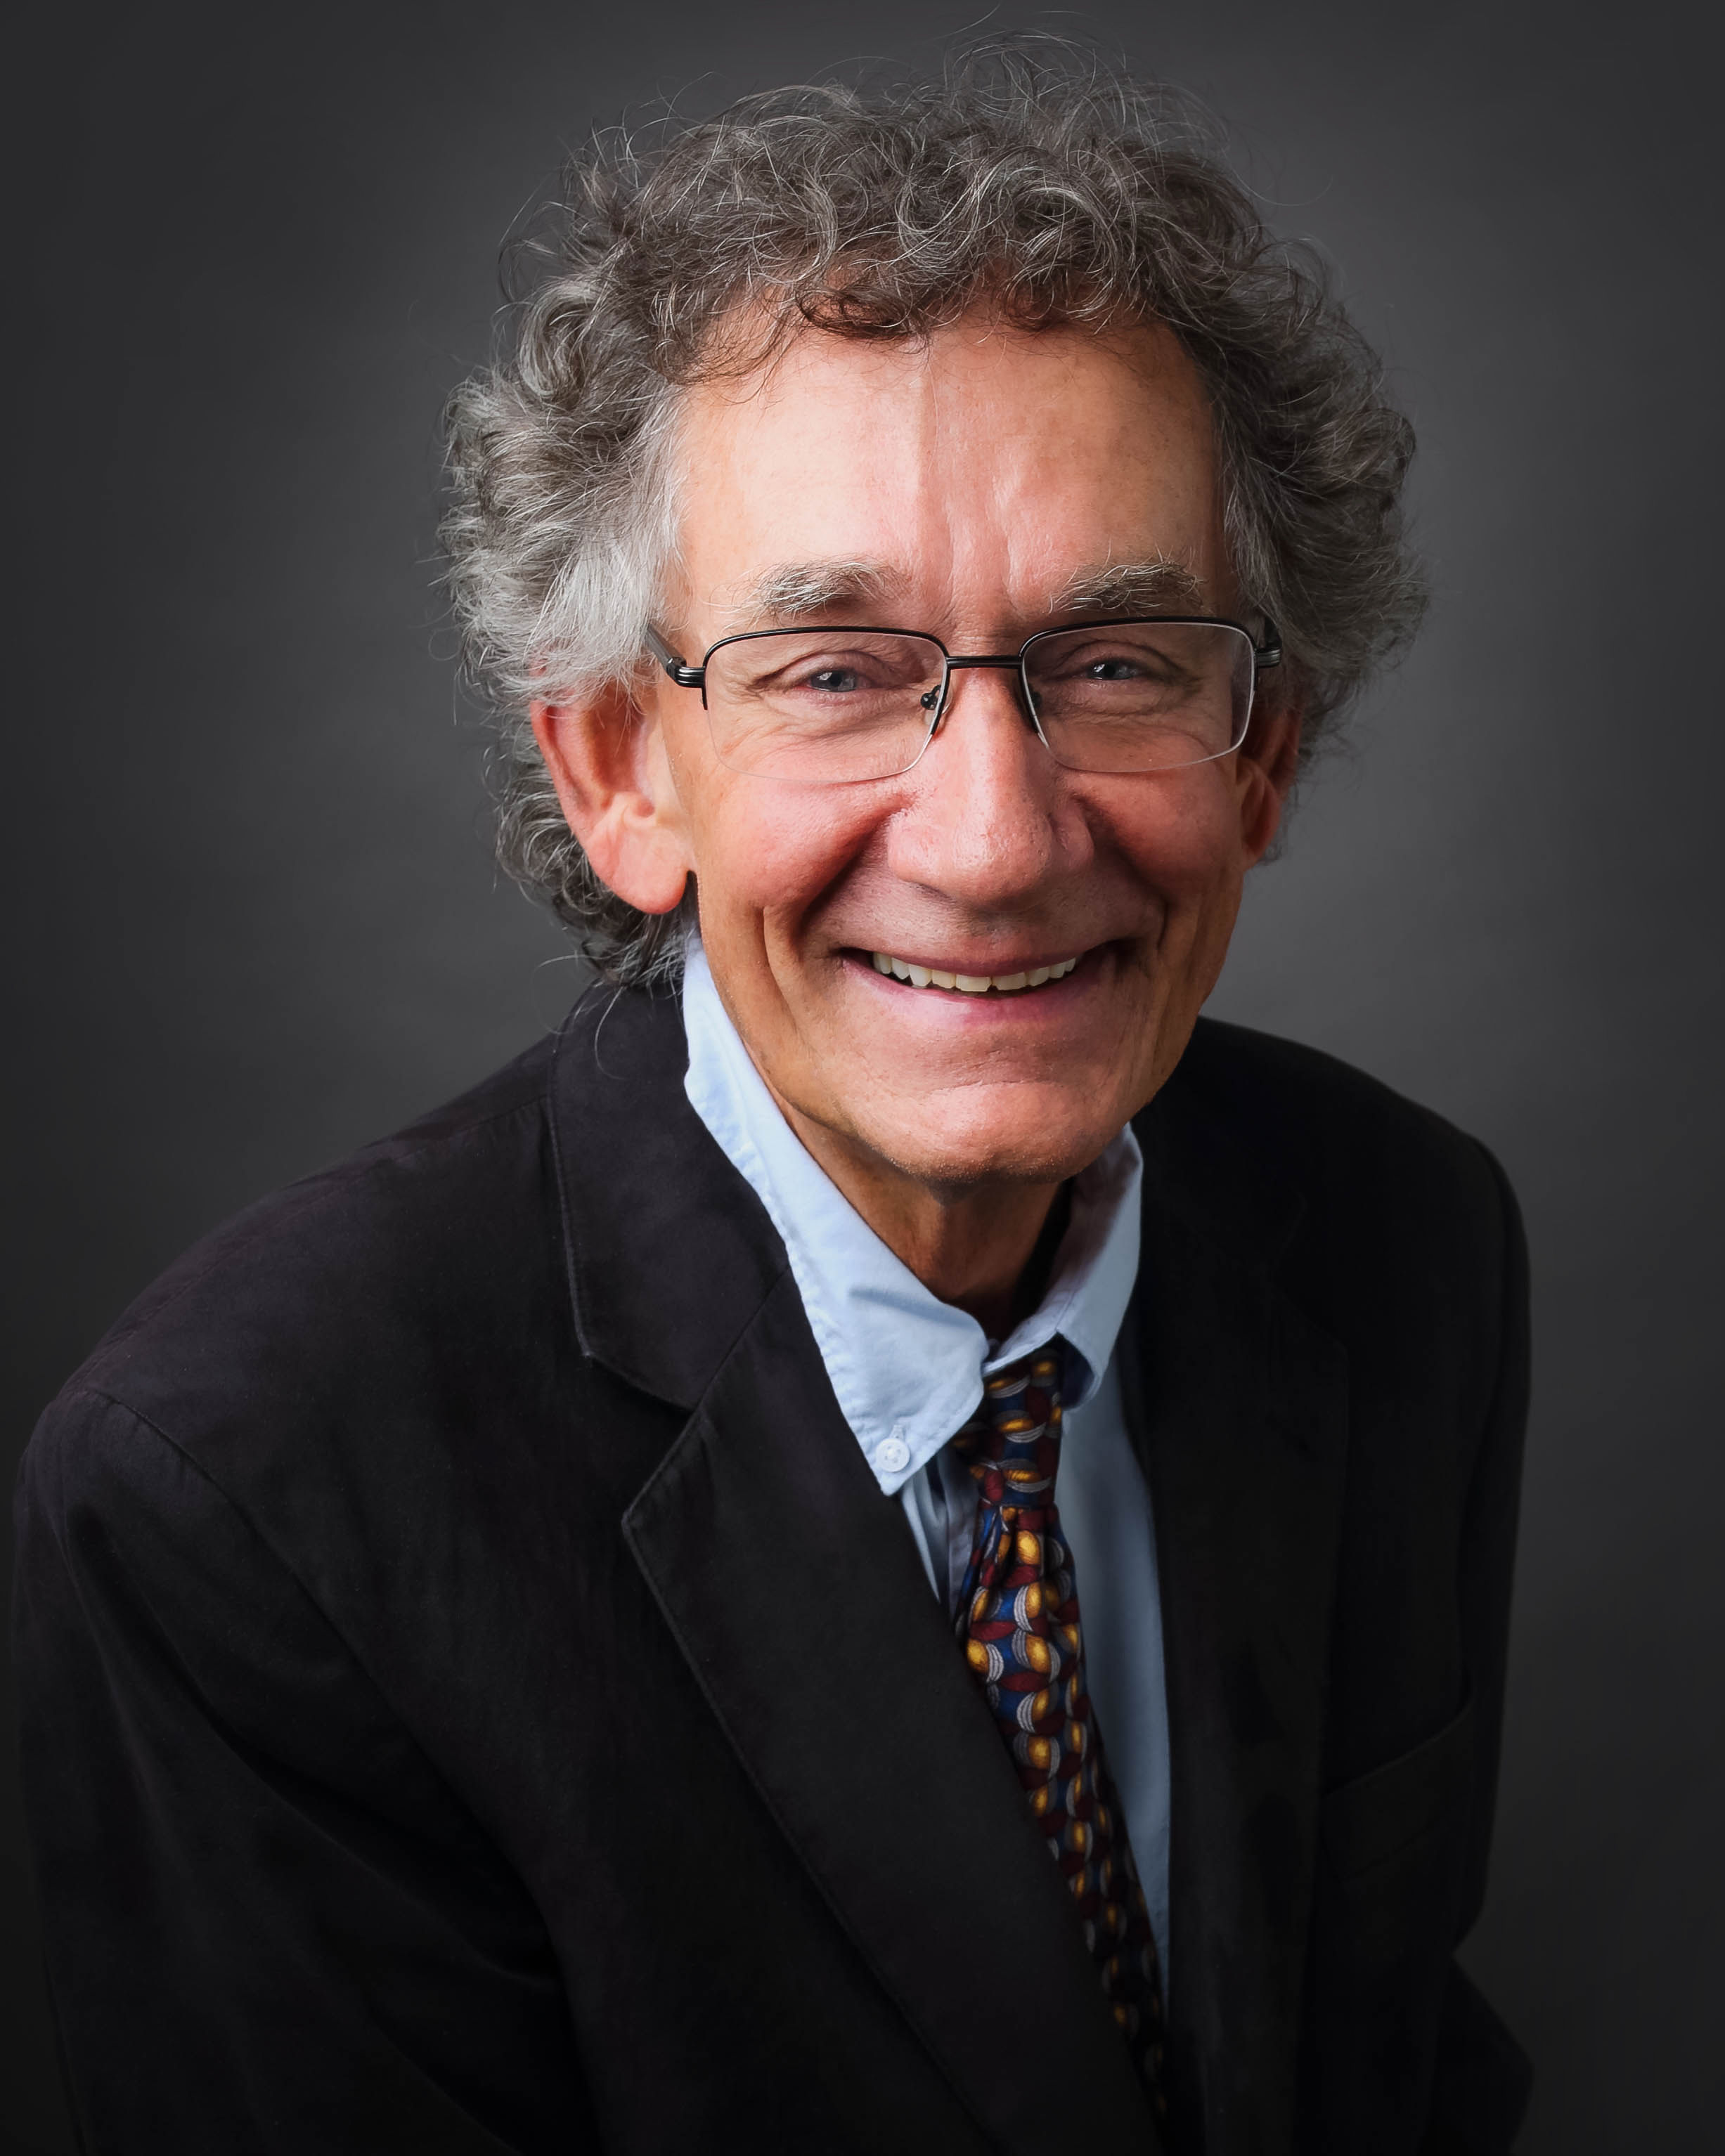 Profile photo of Dr. Steven Lantzy, 